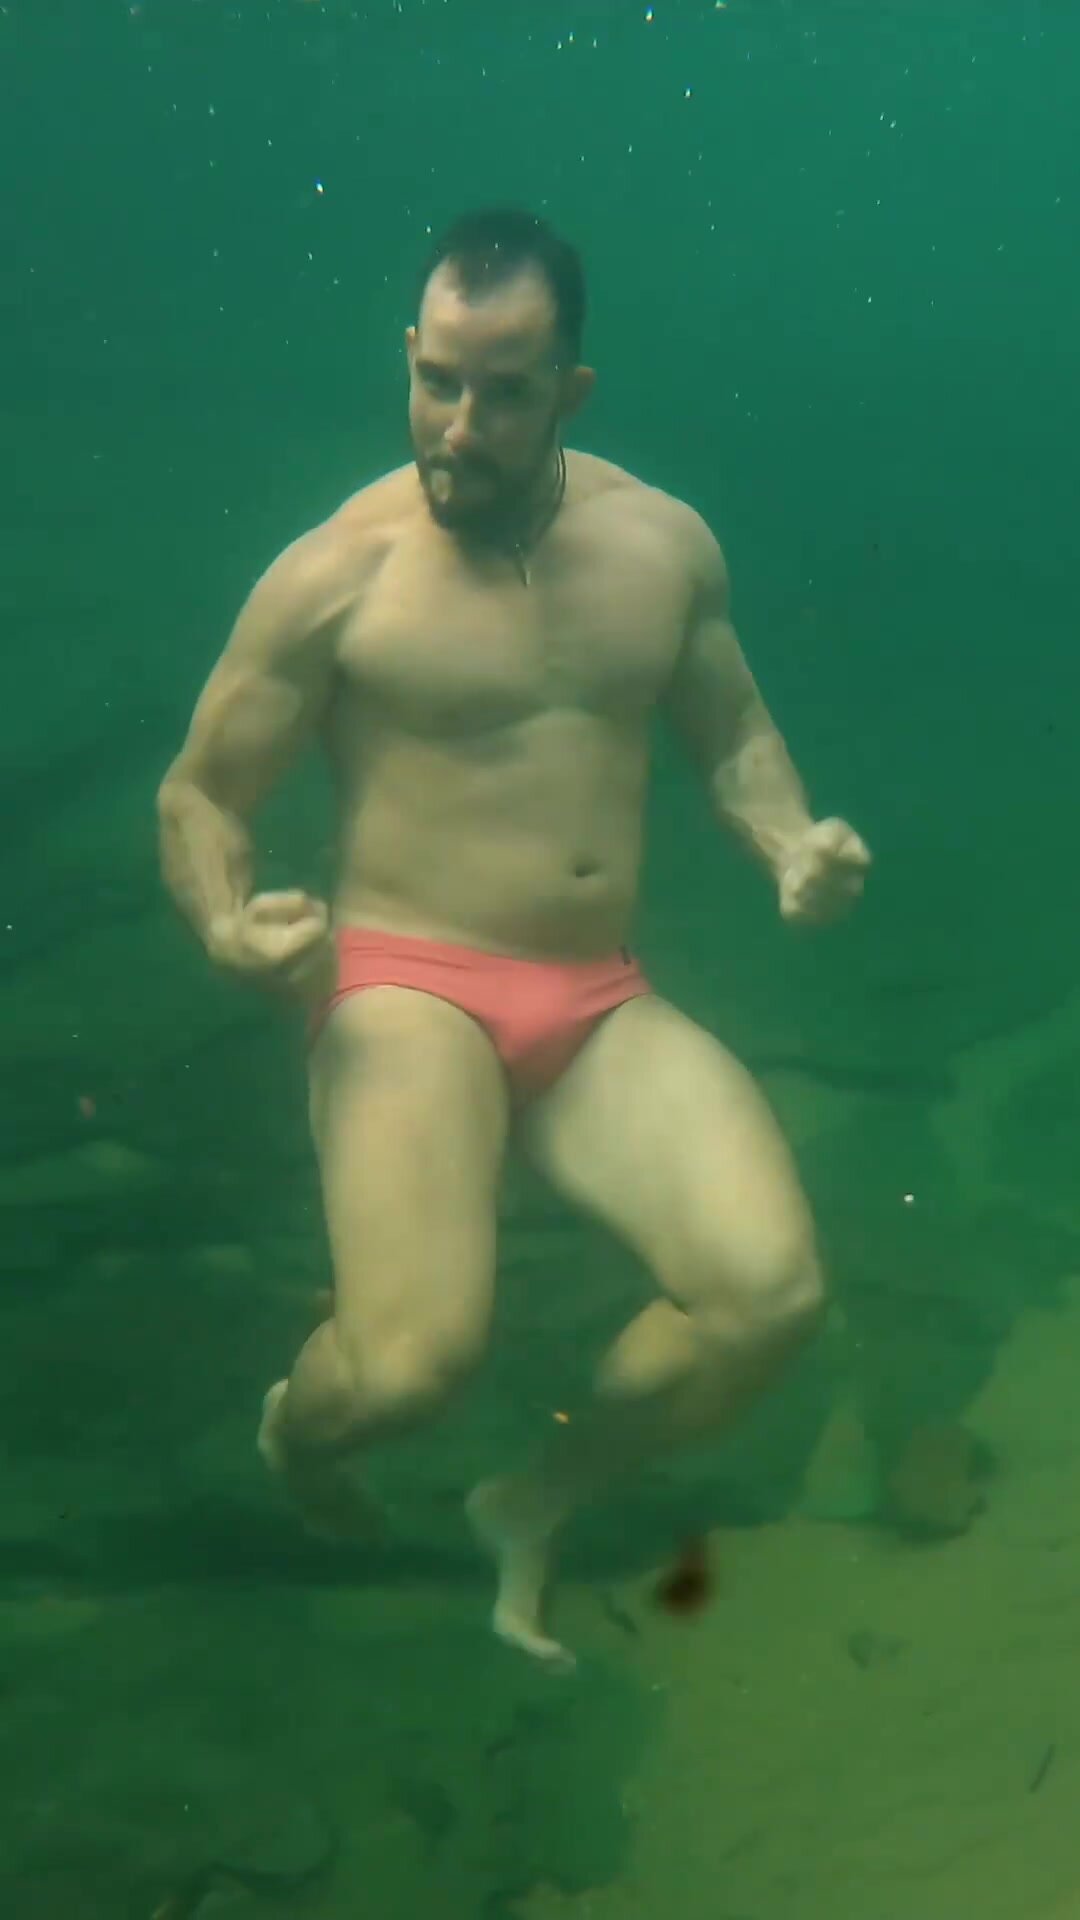 Brazilian hottie barefaced underwater in bulging speedo - video 6